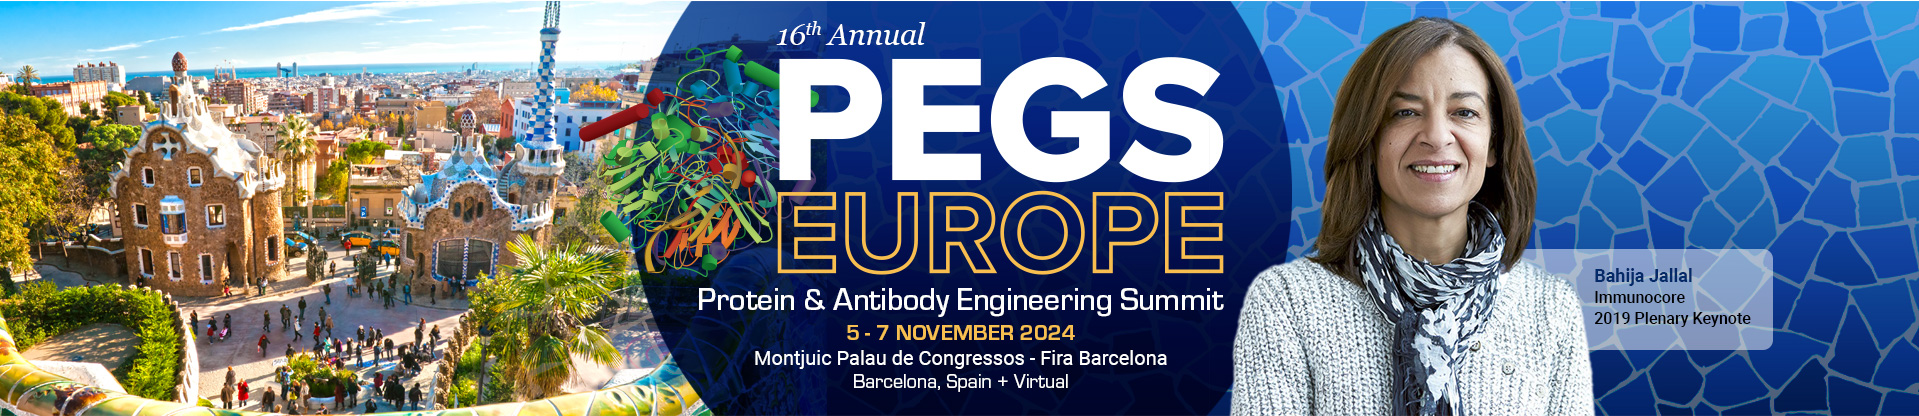 PEGS Summit Europe - 2024